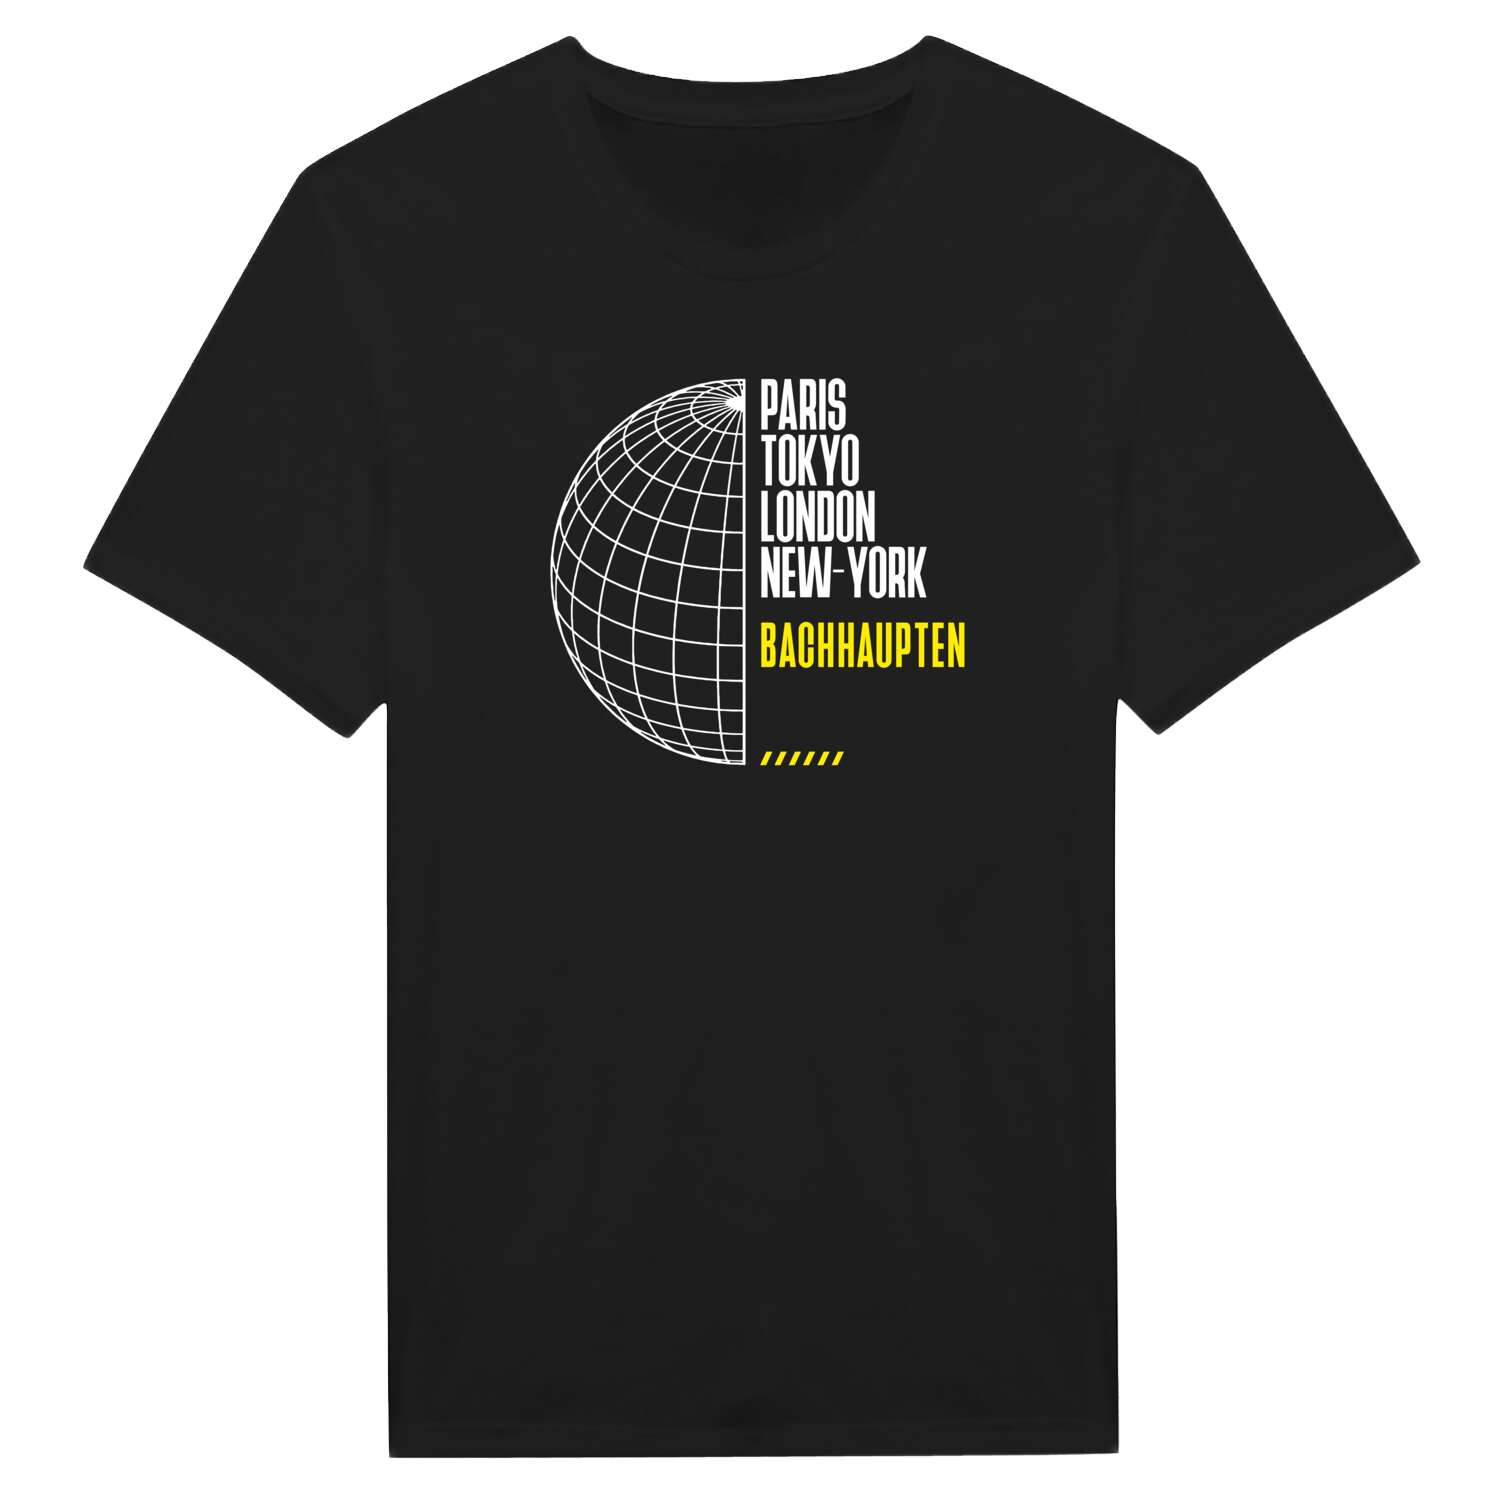 Bachhaupten T-Shirt »Paris Tokyo London«